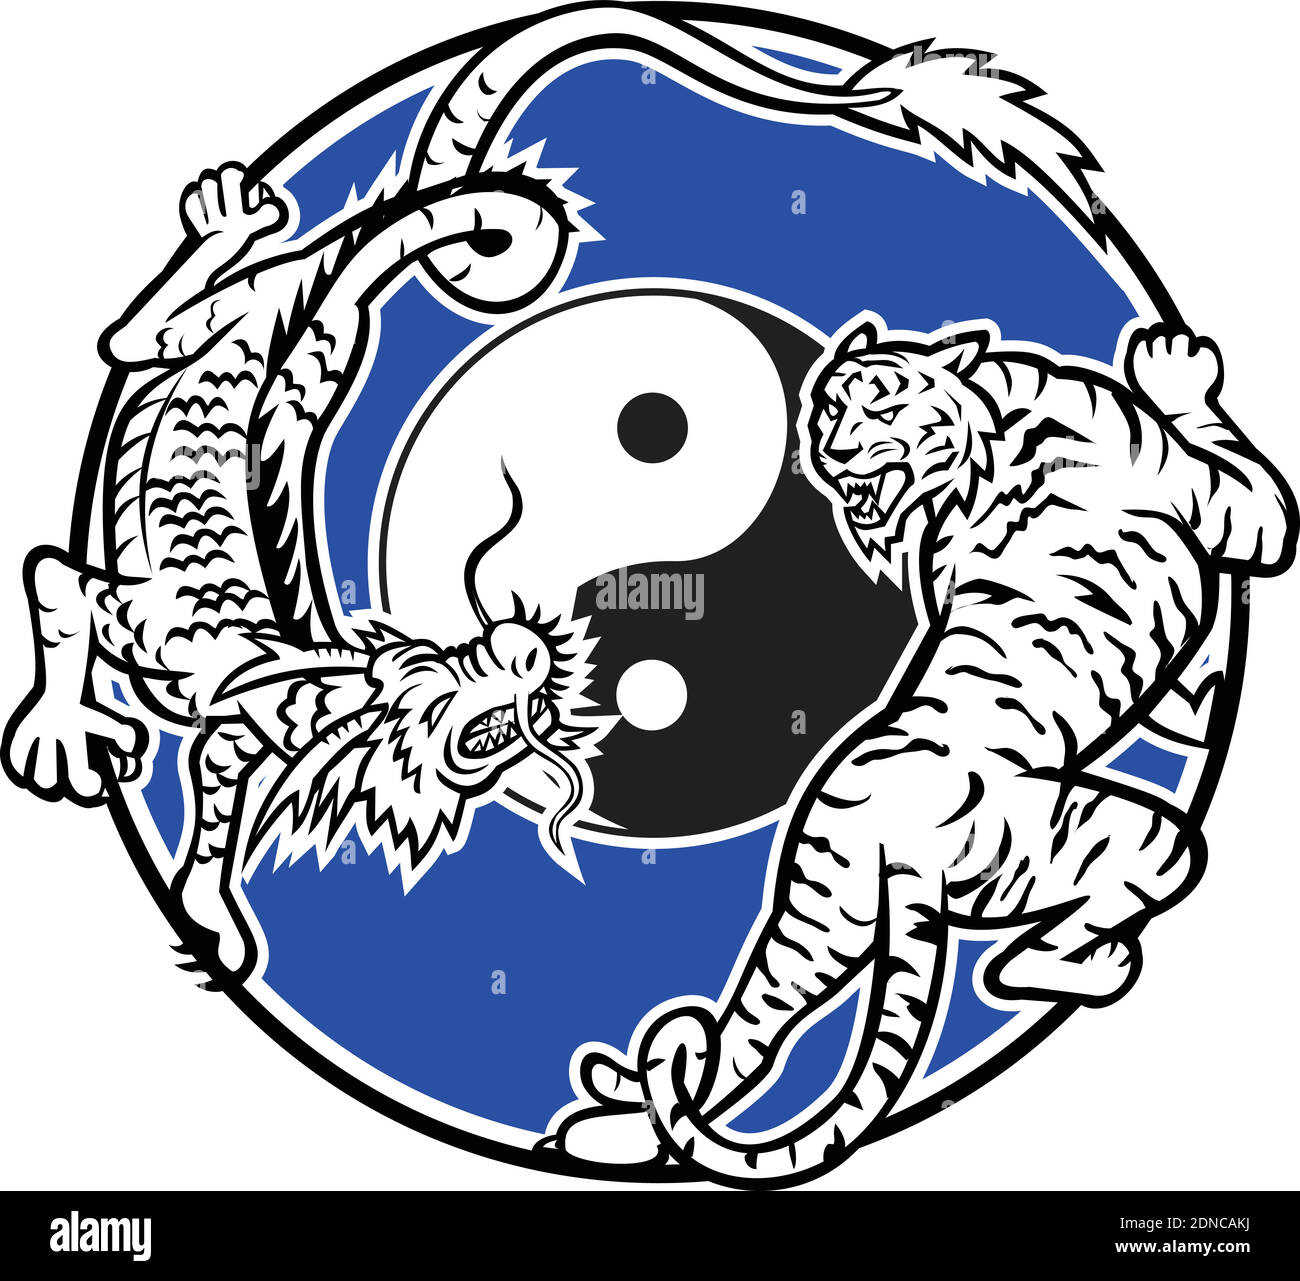 Icône mascotte illustration d'un tigre et dragon chinois stacking et lutte avec le symbole yin yang au milieu du cercle intérieur sur fond isolé i Illustration de Vecteur